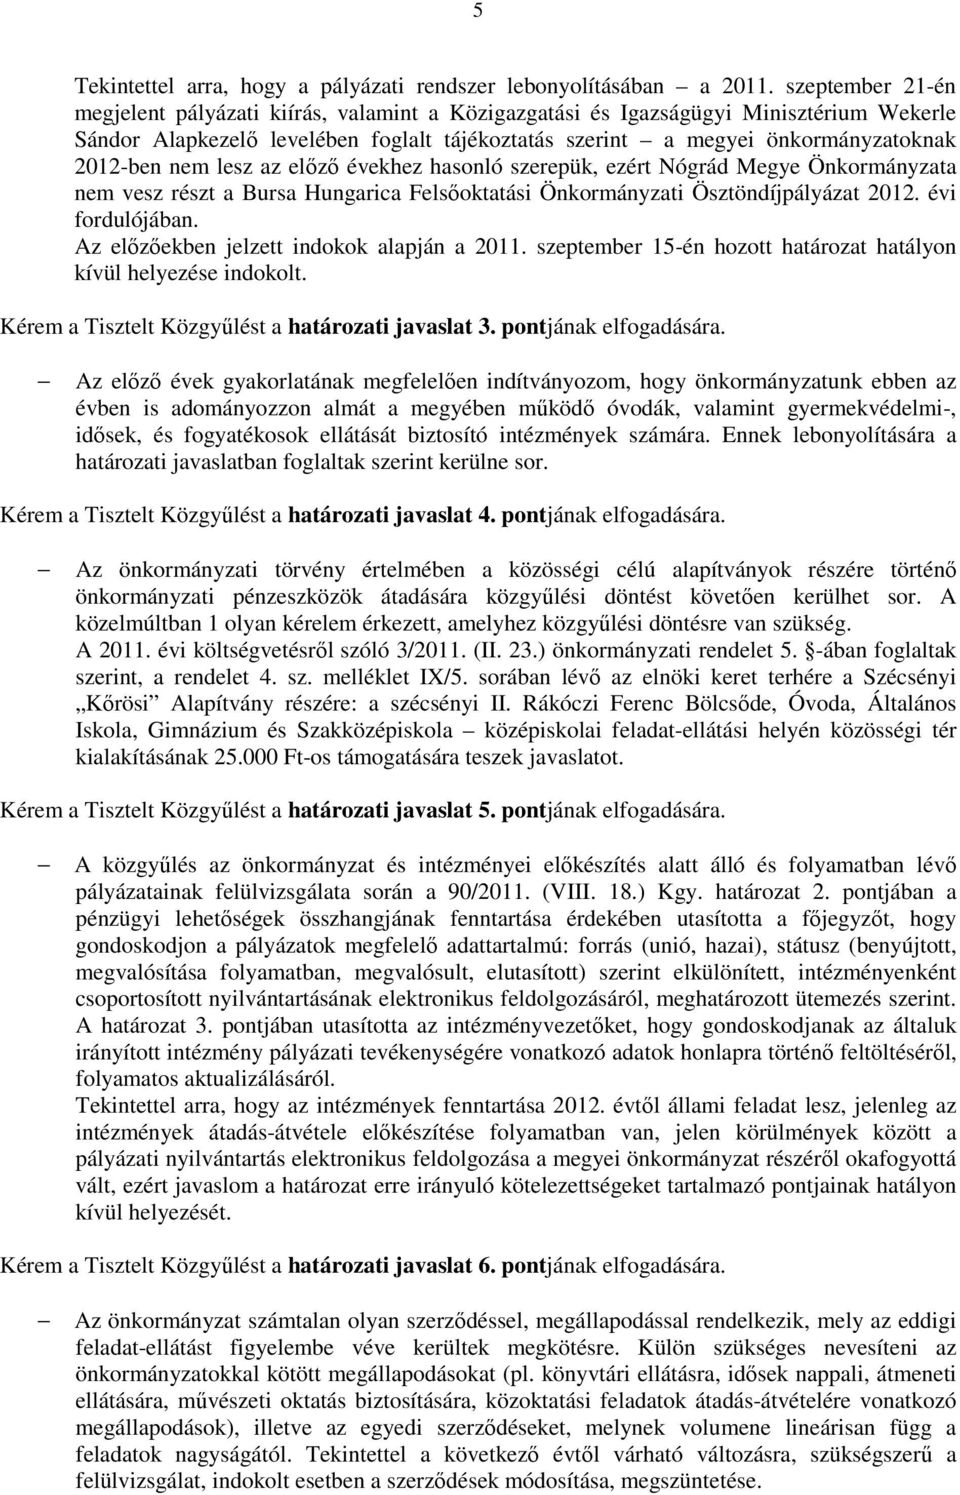 nem lesz az előző évekhez hasonló szerepük, ezért Nógrád Megye Önkormányzata nem vesz részt a Bursa Hungarica Felsőoktatási Önkormányzati Ösztöndíjpályázat 2012. évi fordulójában.